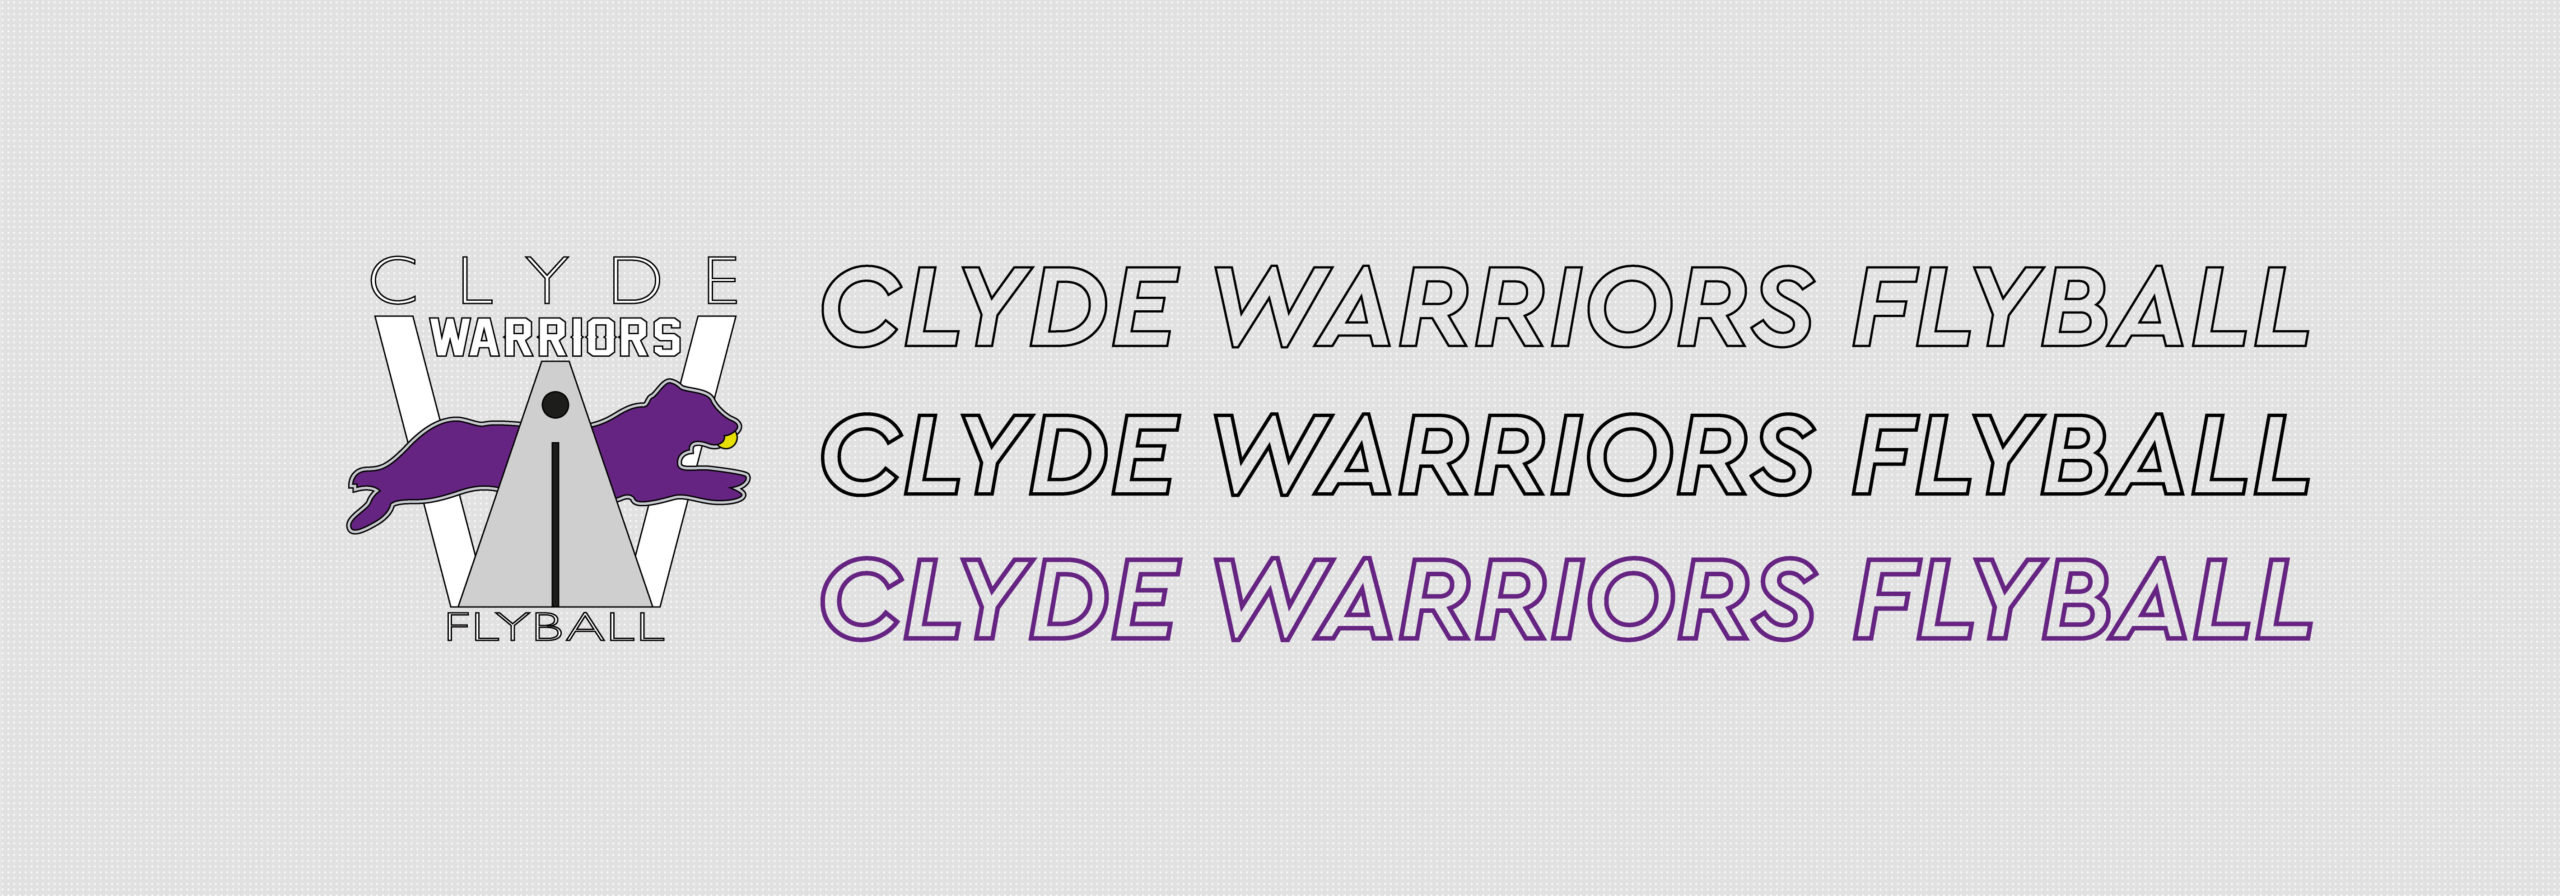 Clyde Warriors Flyball Team